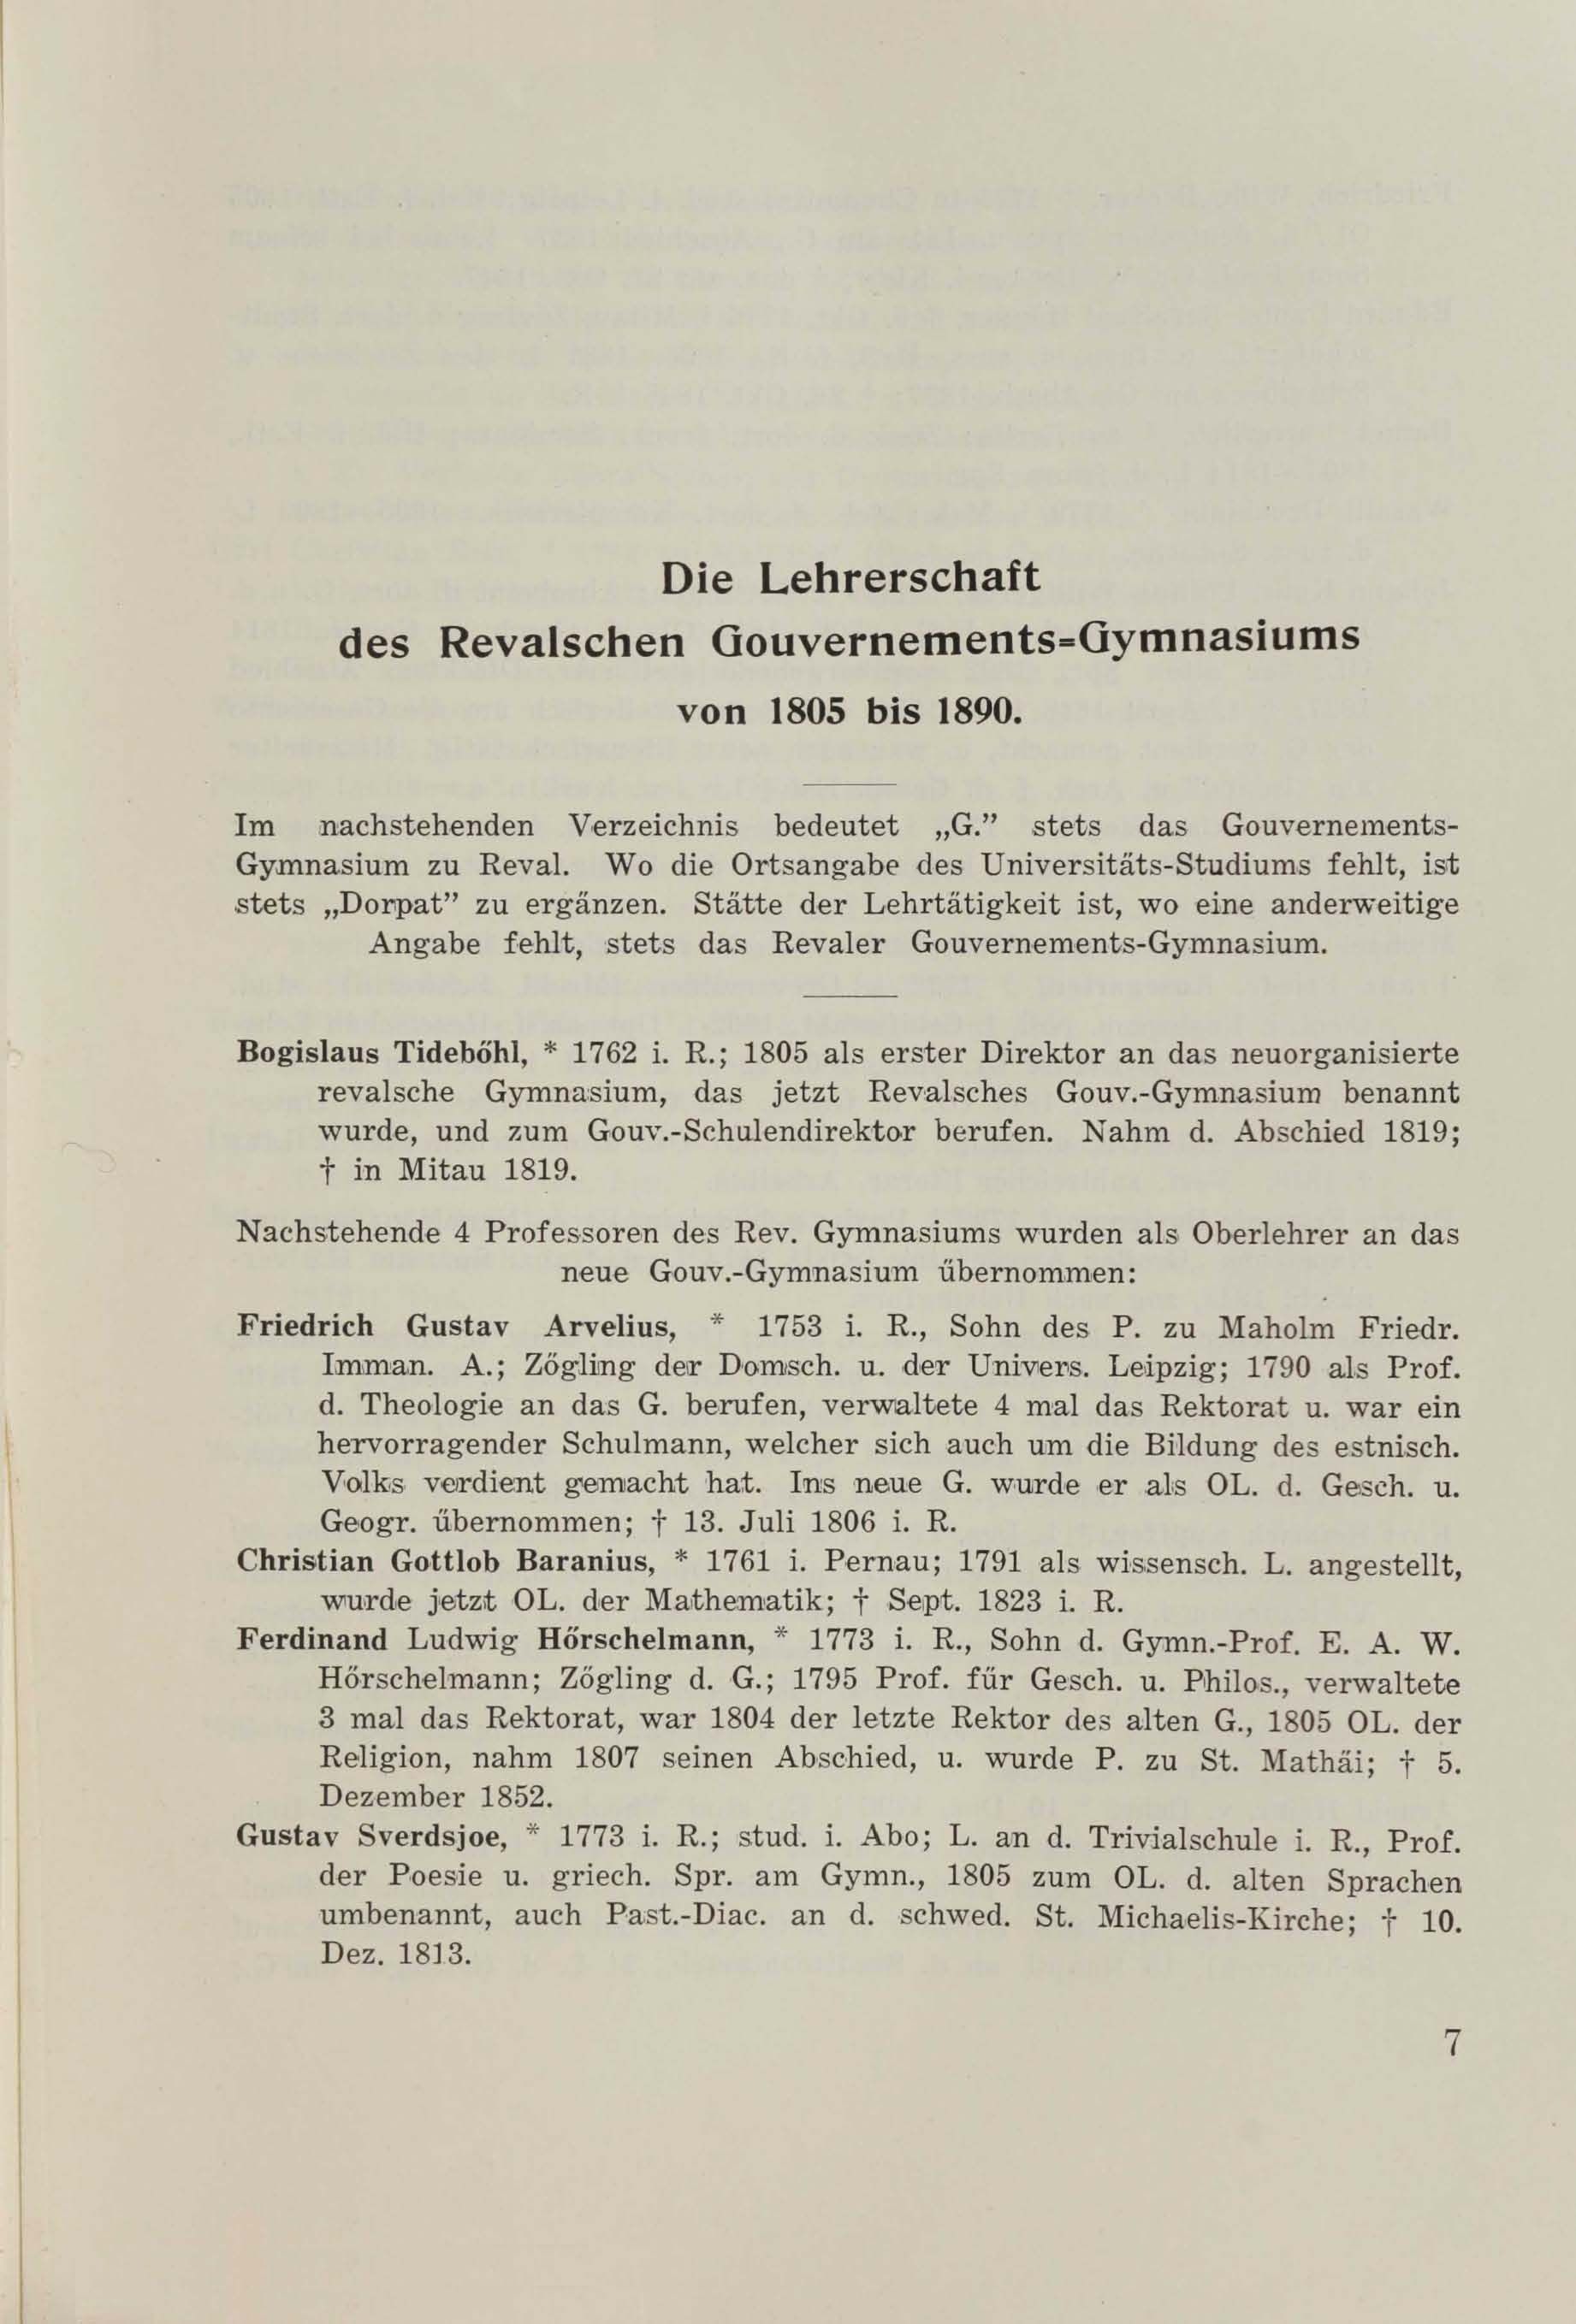 Schüler-Verzeichnis des Revalschen Gouvernements-Gymnasiums 1805–1890 (1931) | 18. (7) Põhitekst